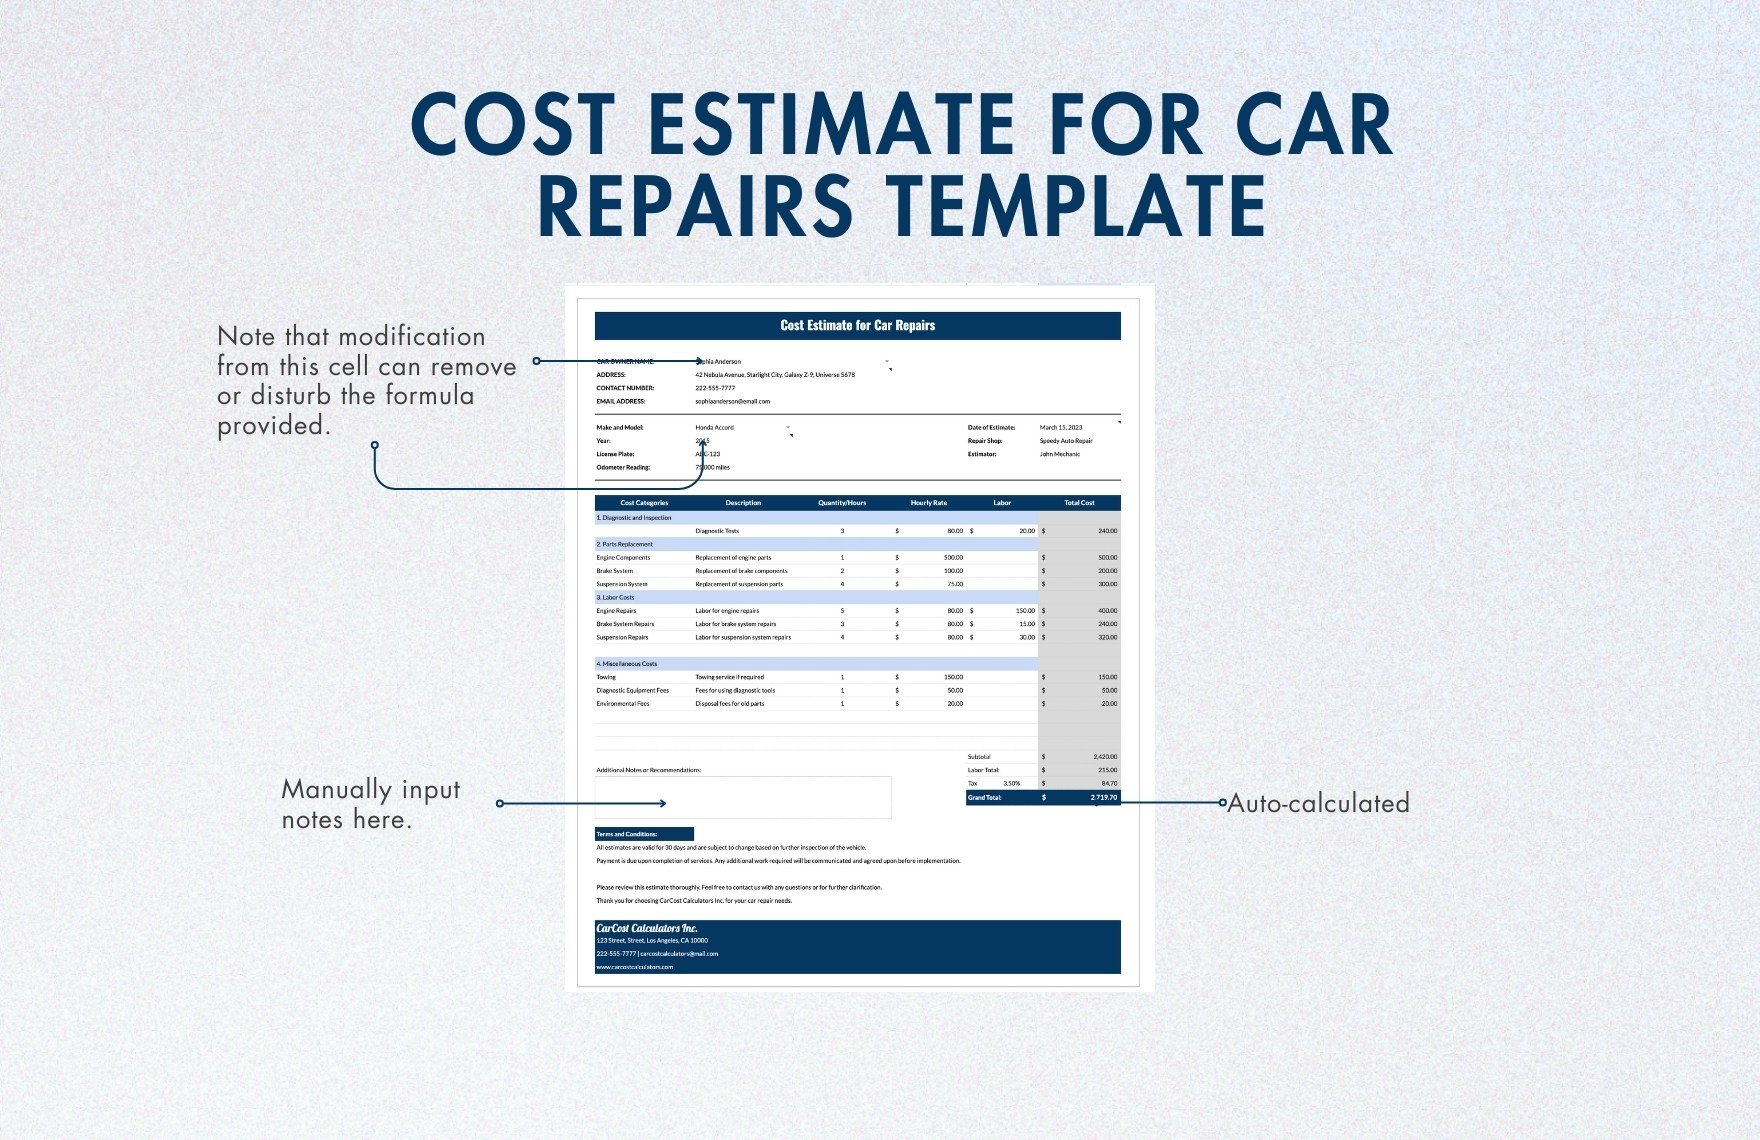 Cost Estimate for Car Repairs Template